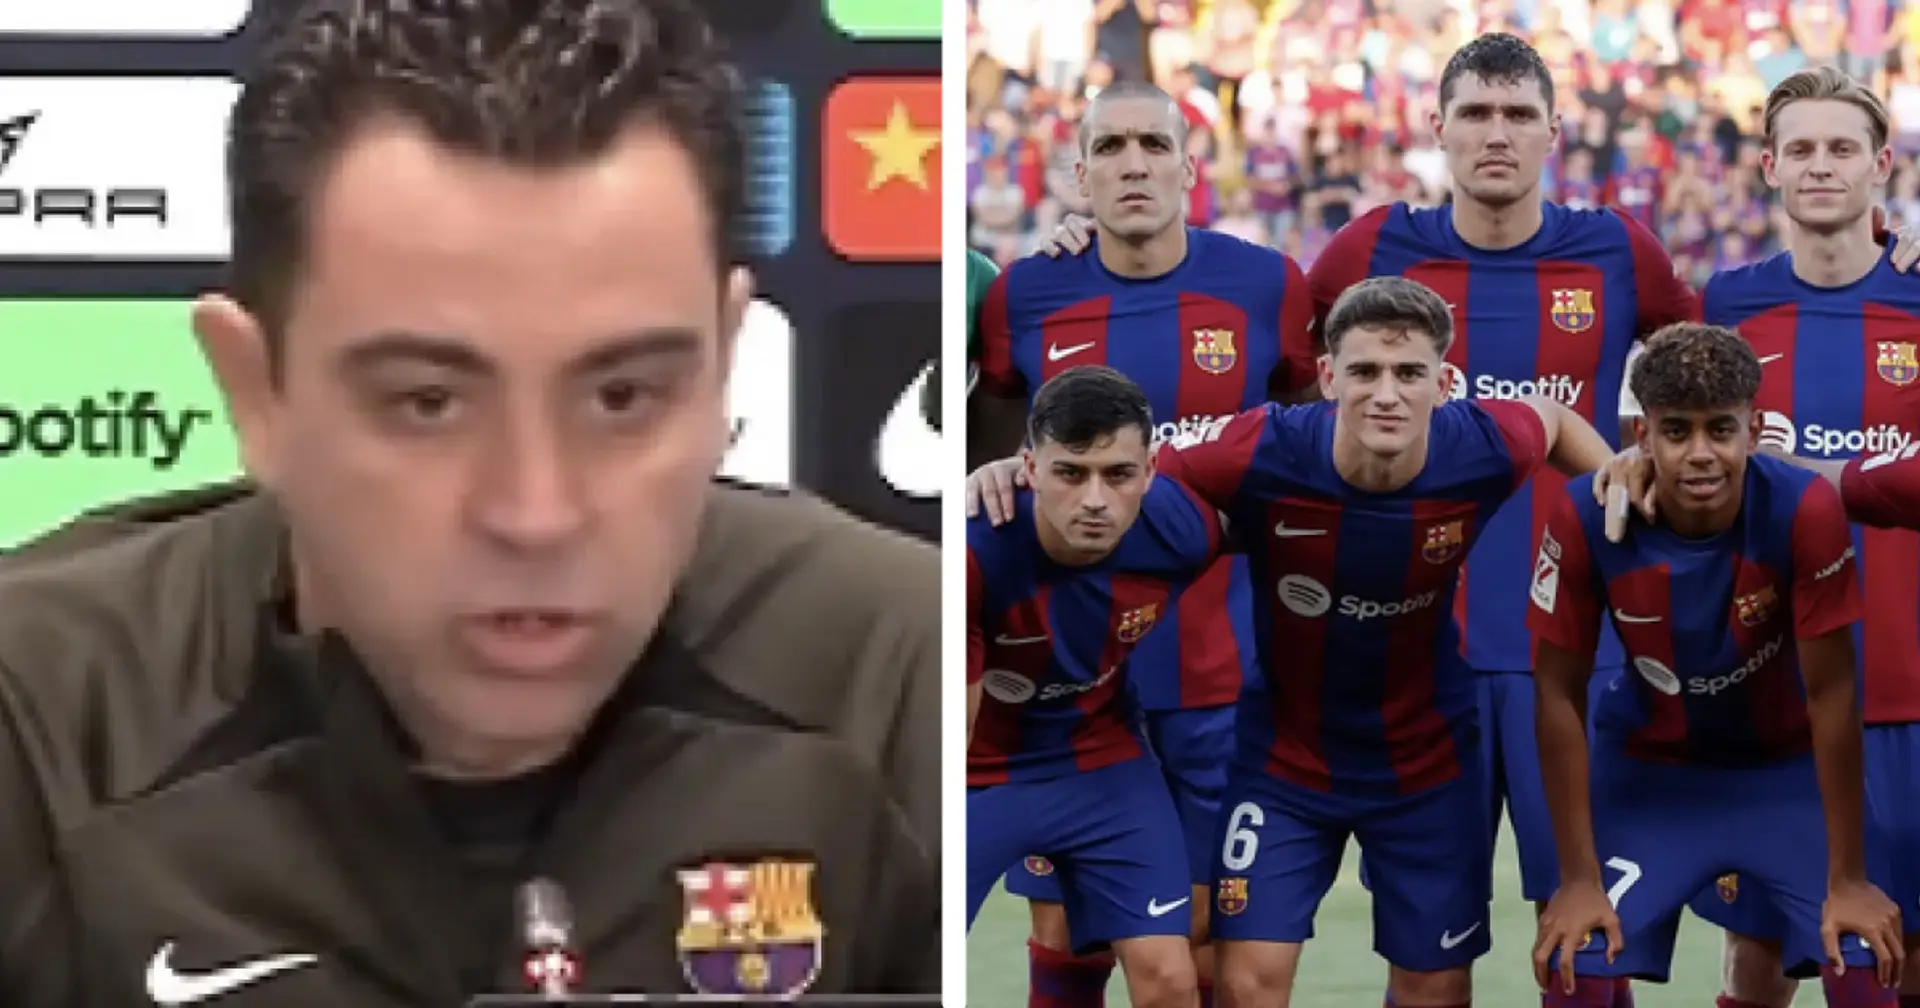 "C'est notre gars": Xavi conseille à un joueur de devenir le futur capitaine du Barça